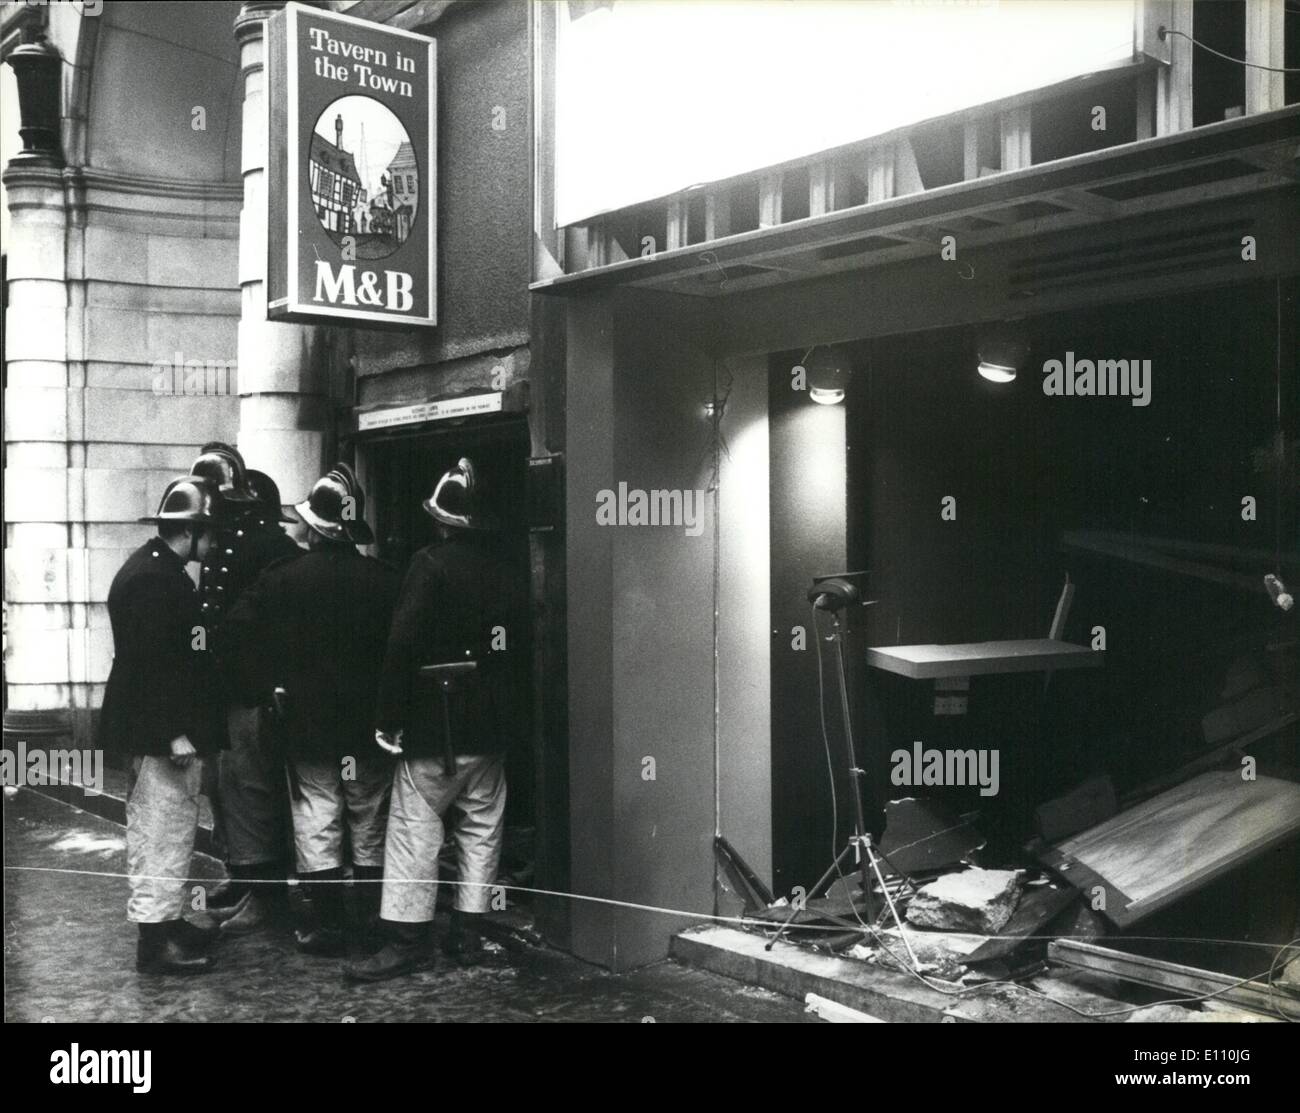 Nov. 11, 1974 - 19 morti e molti feriti in attentati dinamitardi a Birmingham.: 19 persone sono state uccise e 200 feriti da IRA le bombe dei terroristi che è esplosa in due case pubbliche nel centro di Birmingham la scorsa notte. Una bomba è stata al Mulberry Bush public house e l'altra presso la taverna della città. La foto mostra i vigili del fuoco nella foto al di fuori della taverna della città, che mostra la parte interna in frantumi di negozi adiacenti, oggi. Foto Stock